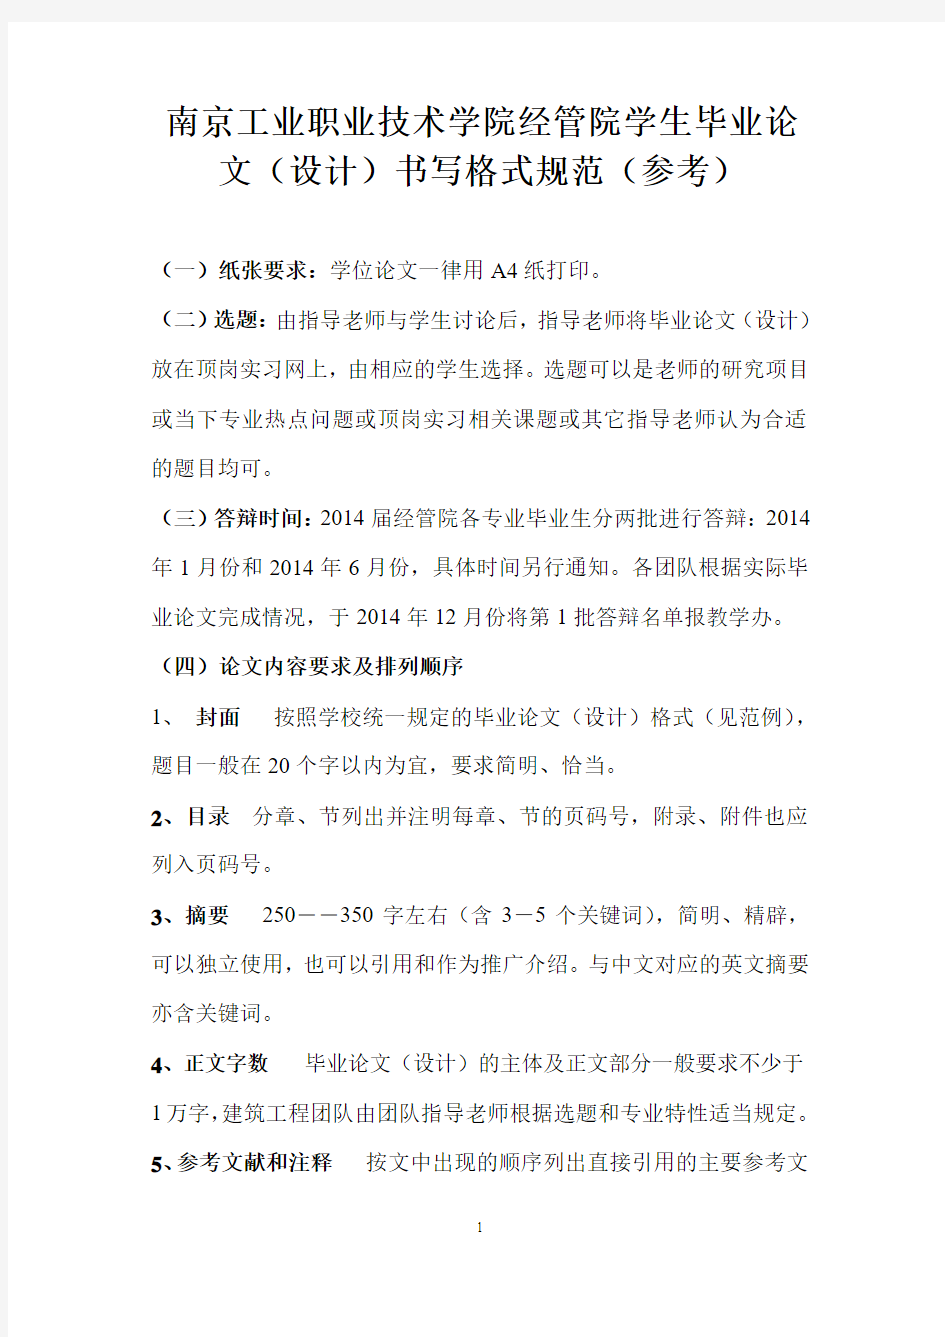 南京工业职业技术学院经济管理学院毕业论文(设计)格式规范及样式(参考)